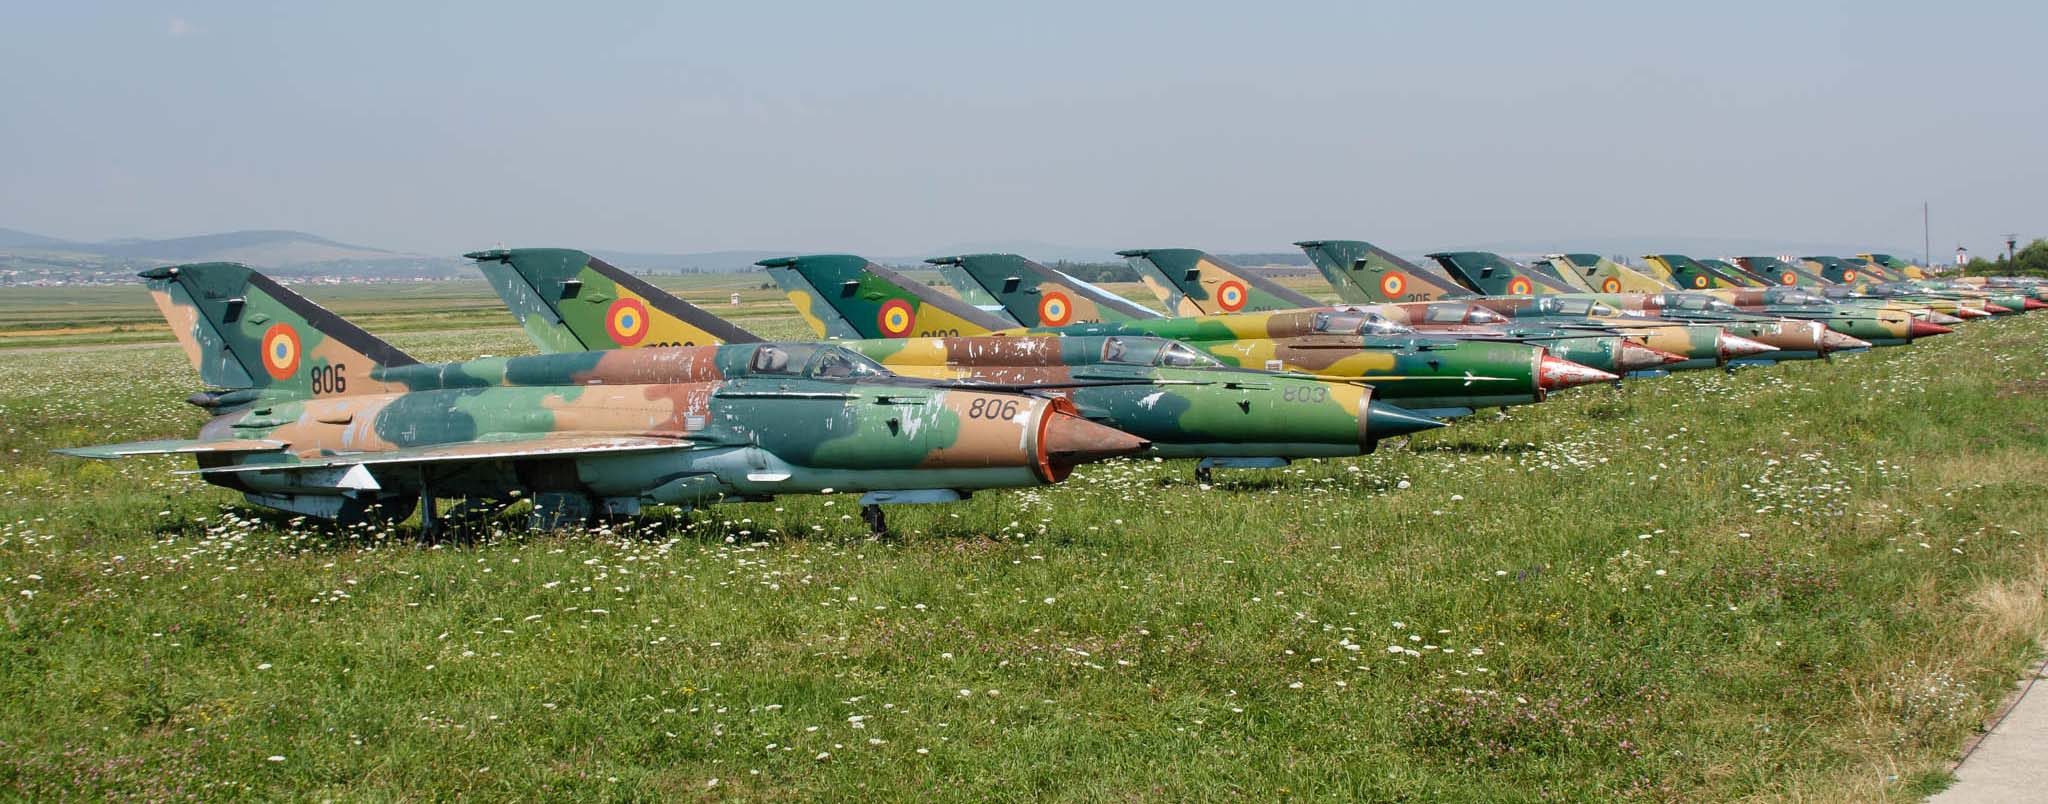 Fortele Aeriene Romne MiG-21